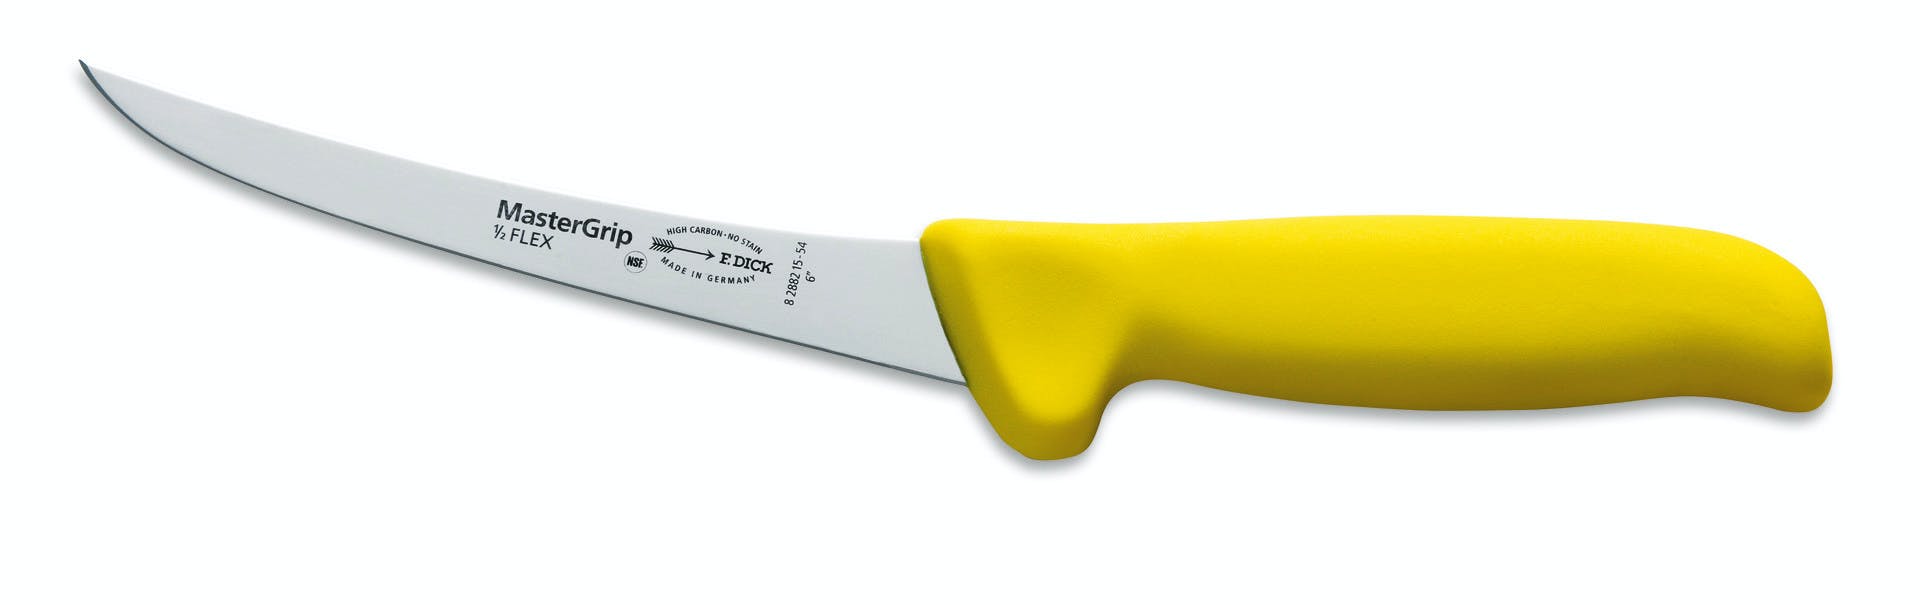 Das Tranchiermesser ist ein Messer, das dem korrekten Zerlegen von gegarten Fleischwaren wie z.B. Schmorbraten dient. Das Tranchiermesser ist ein langes, spitz zulaufendes Messer zum Zerteilen von großen Fleischstücken oder Fisch. Leicht zu erkennen ist das Tranchiermesser durch seine etwas geschwungene Klinge, welche an der Unterseite eine kleine Wölbung aufweist. 

  
Das Ausbeinmesser ist ein Messer, das zum Lösen der Knochen aus dem Fleisch verwendet wird. Haut und Sehnen lassen sich damit ebenfalls leicht entfernen. Schon optisch unterscheidet es sich von anderen Messern, da es über eine vergleichsweise schmale und lange Klinge verfügt. Die Form der Klinge des Ausbeinmessers ist entscheidend für dessen Zweck.  
&nbsp;
